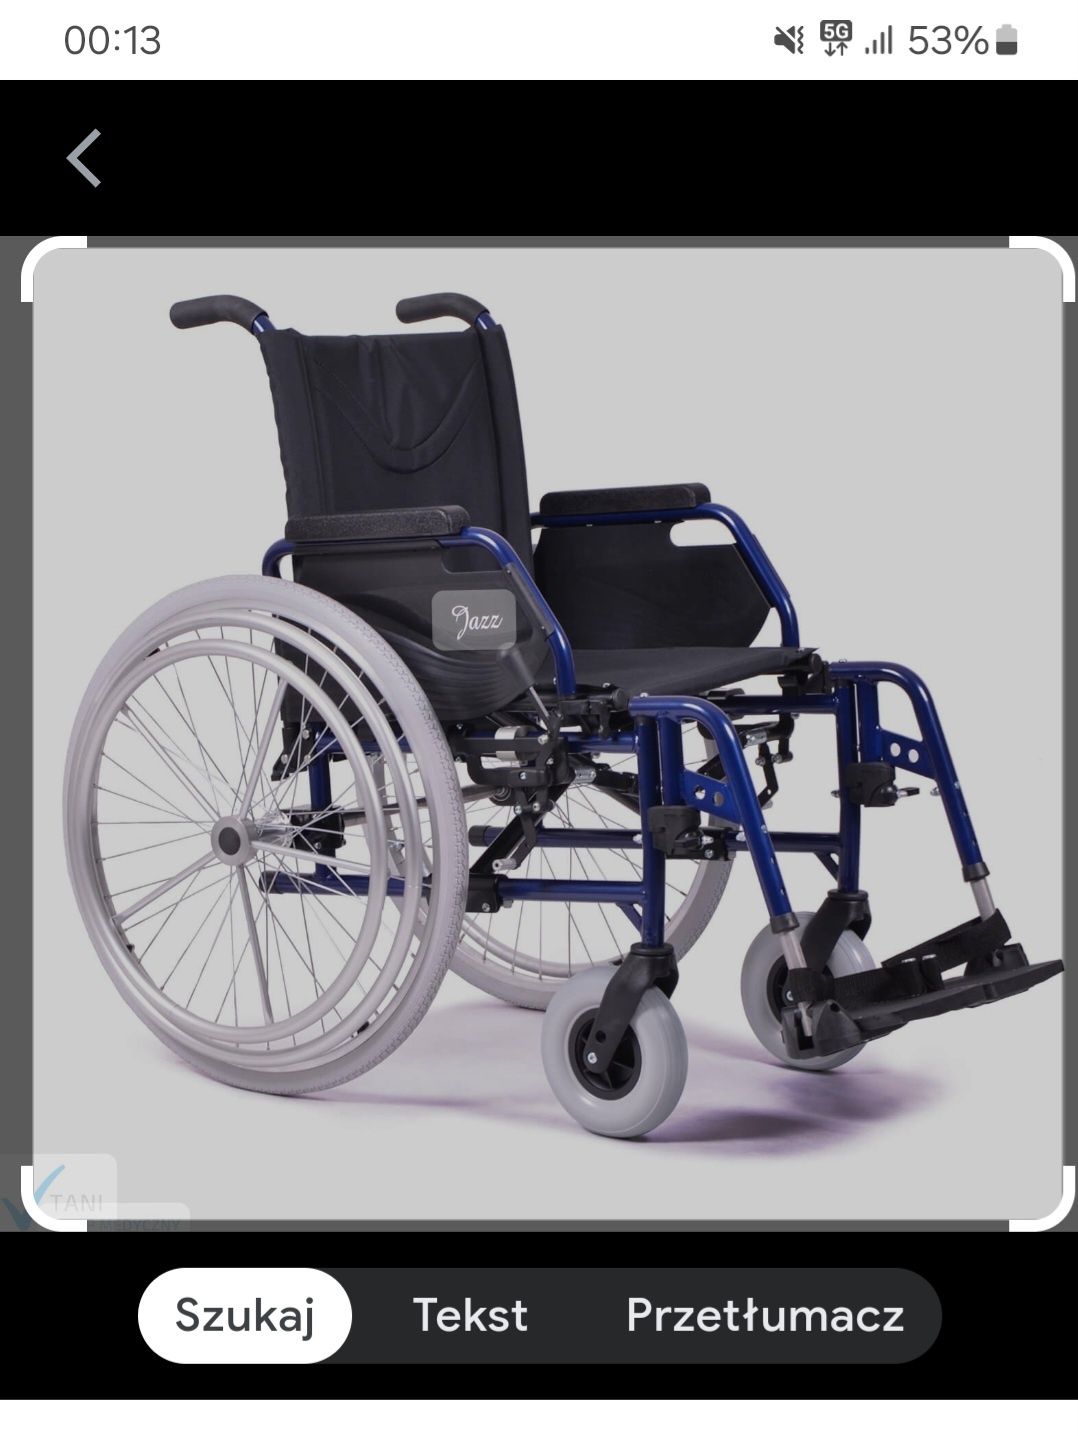 Witam sprzedam nowy wózek inwalidzki